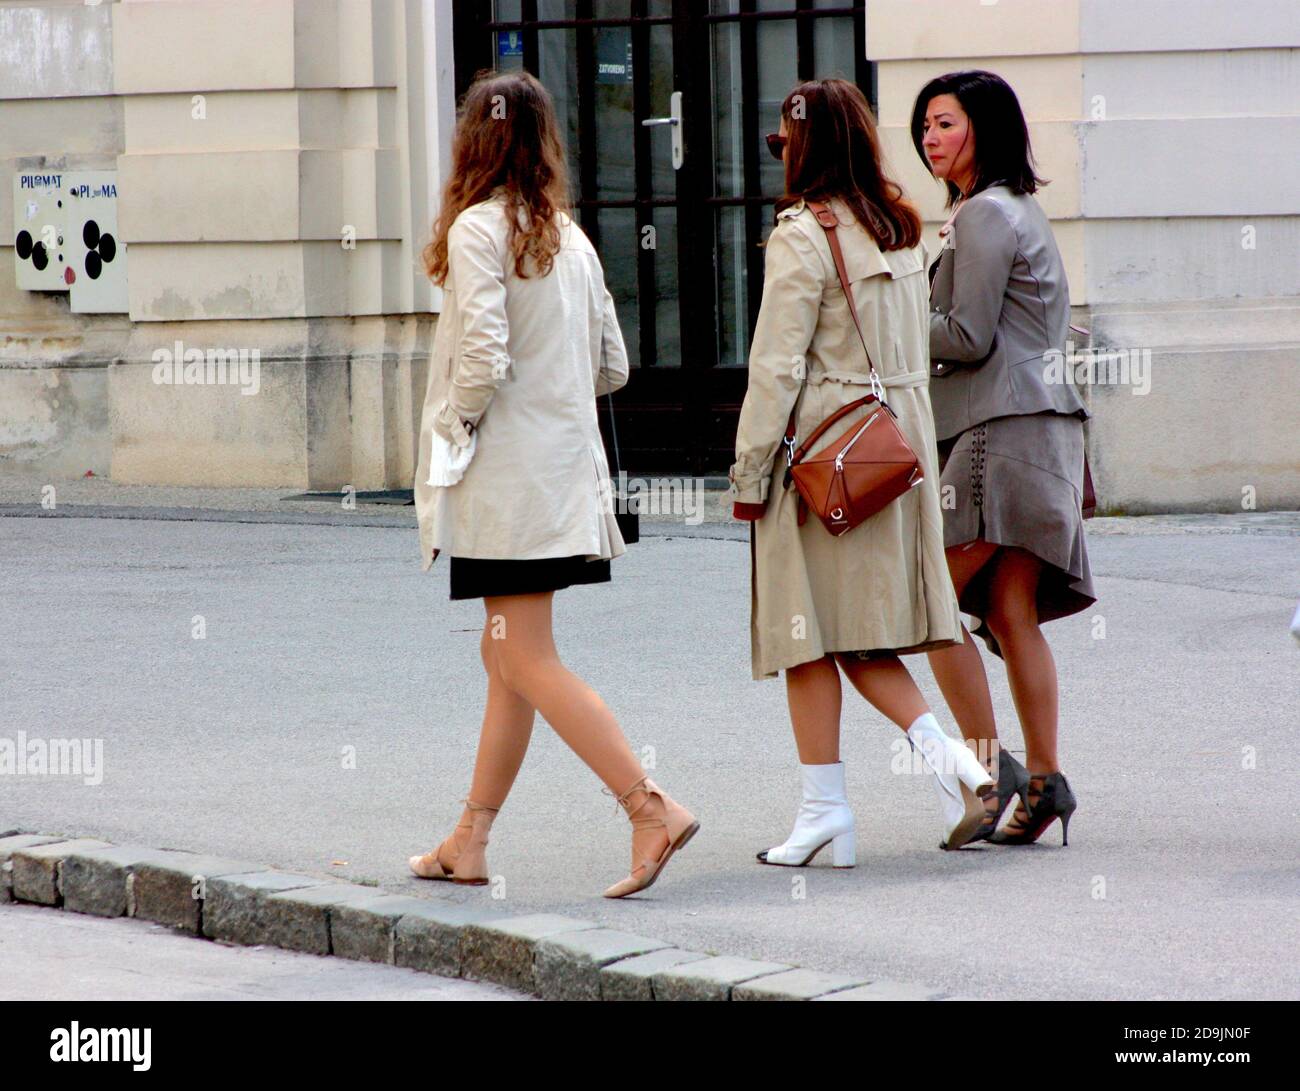 Groupe de femmes marchant dans une rue à Zagreb, Croatie Banque D'Images